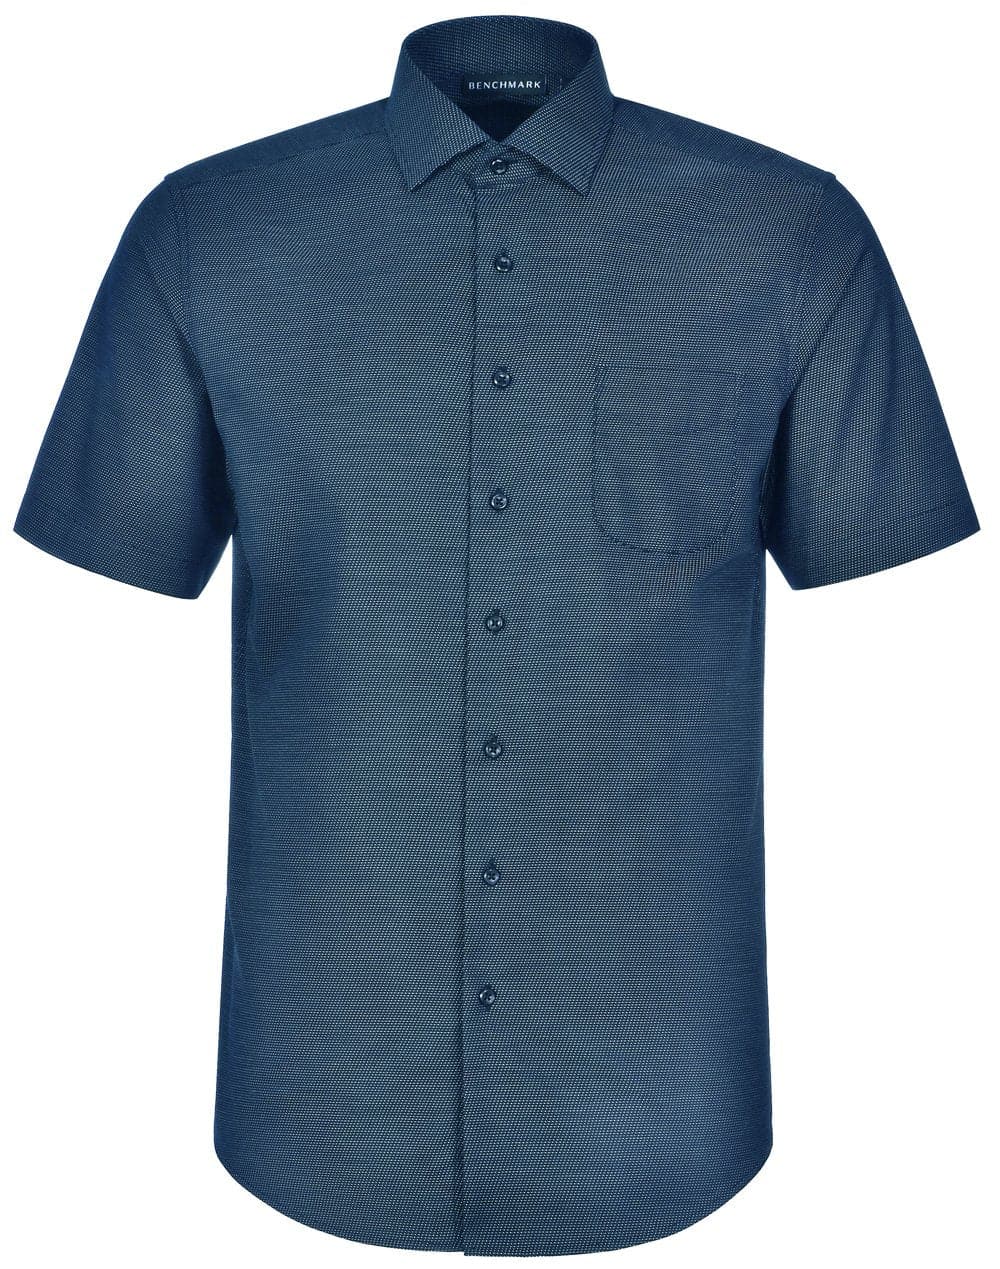 Mens Dot Jacquard Stretch Short Sleeve Ascot Shirt M7400S Casual Wear Winning Spirit Ocean Blue XS 